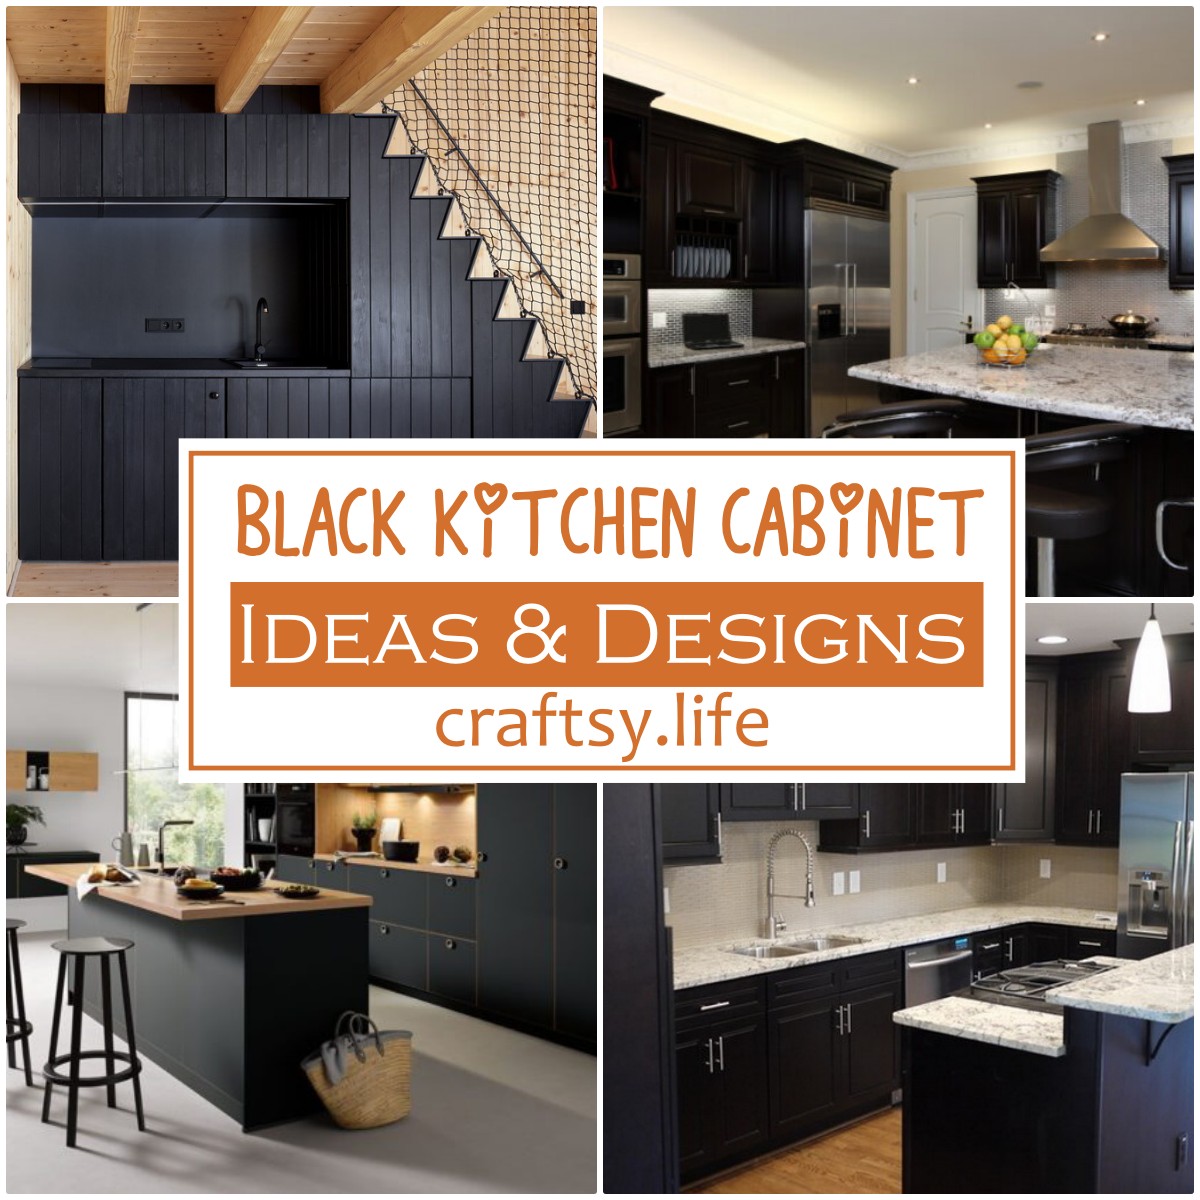 Black Kitchen Cabinet Ideas & Designs